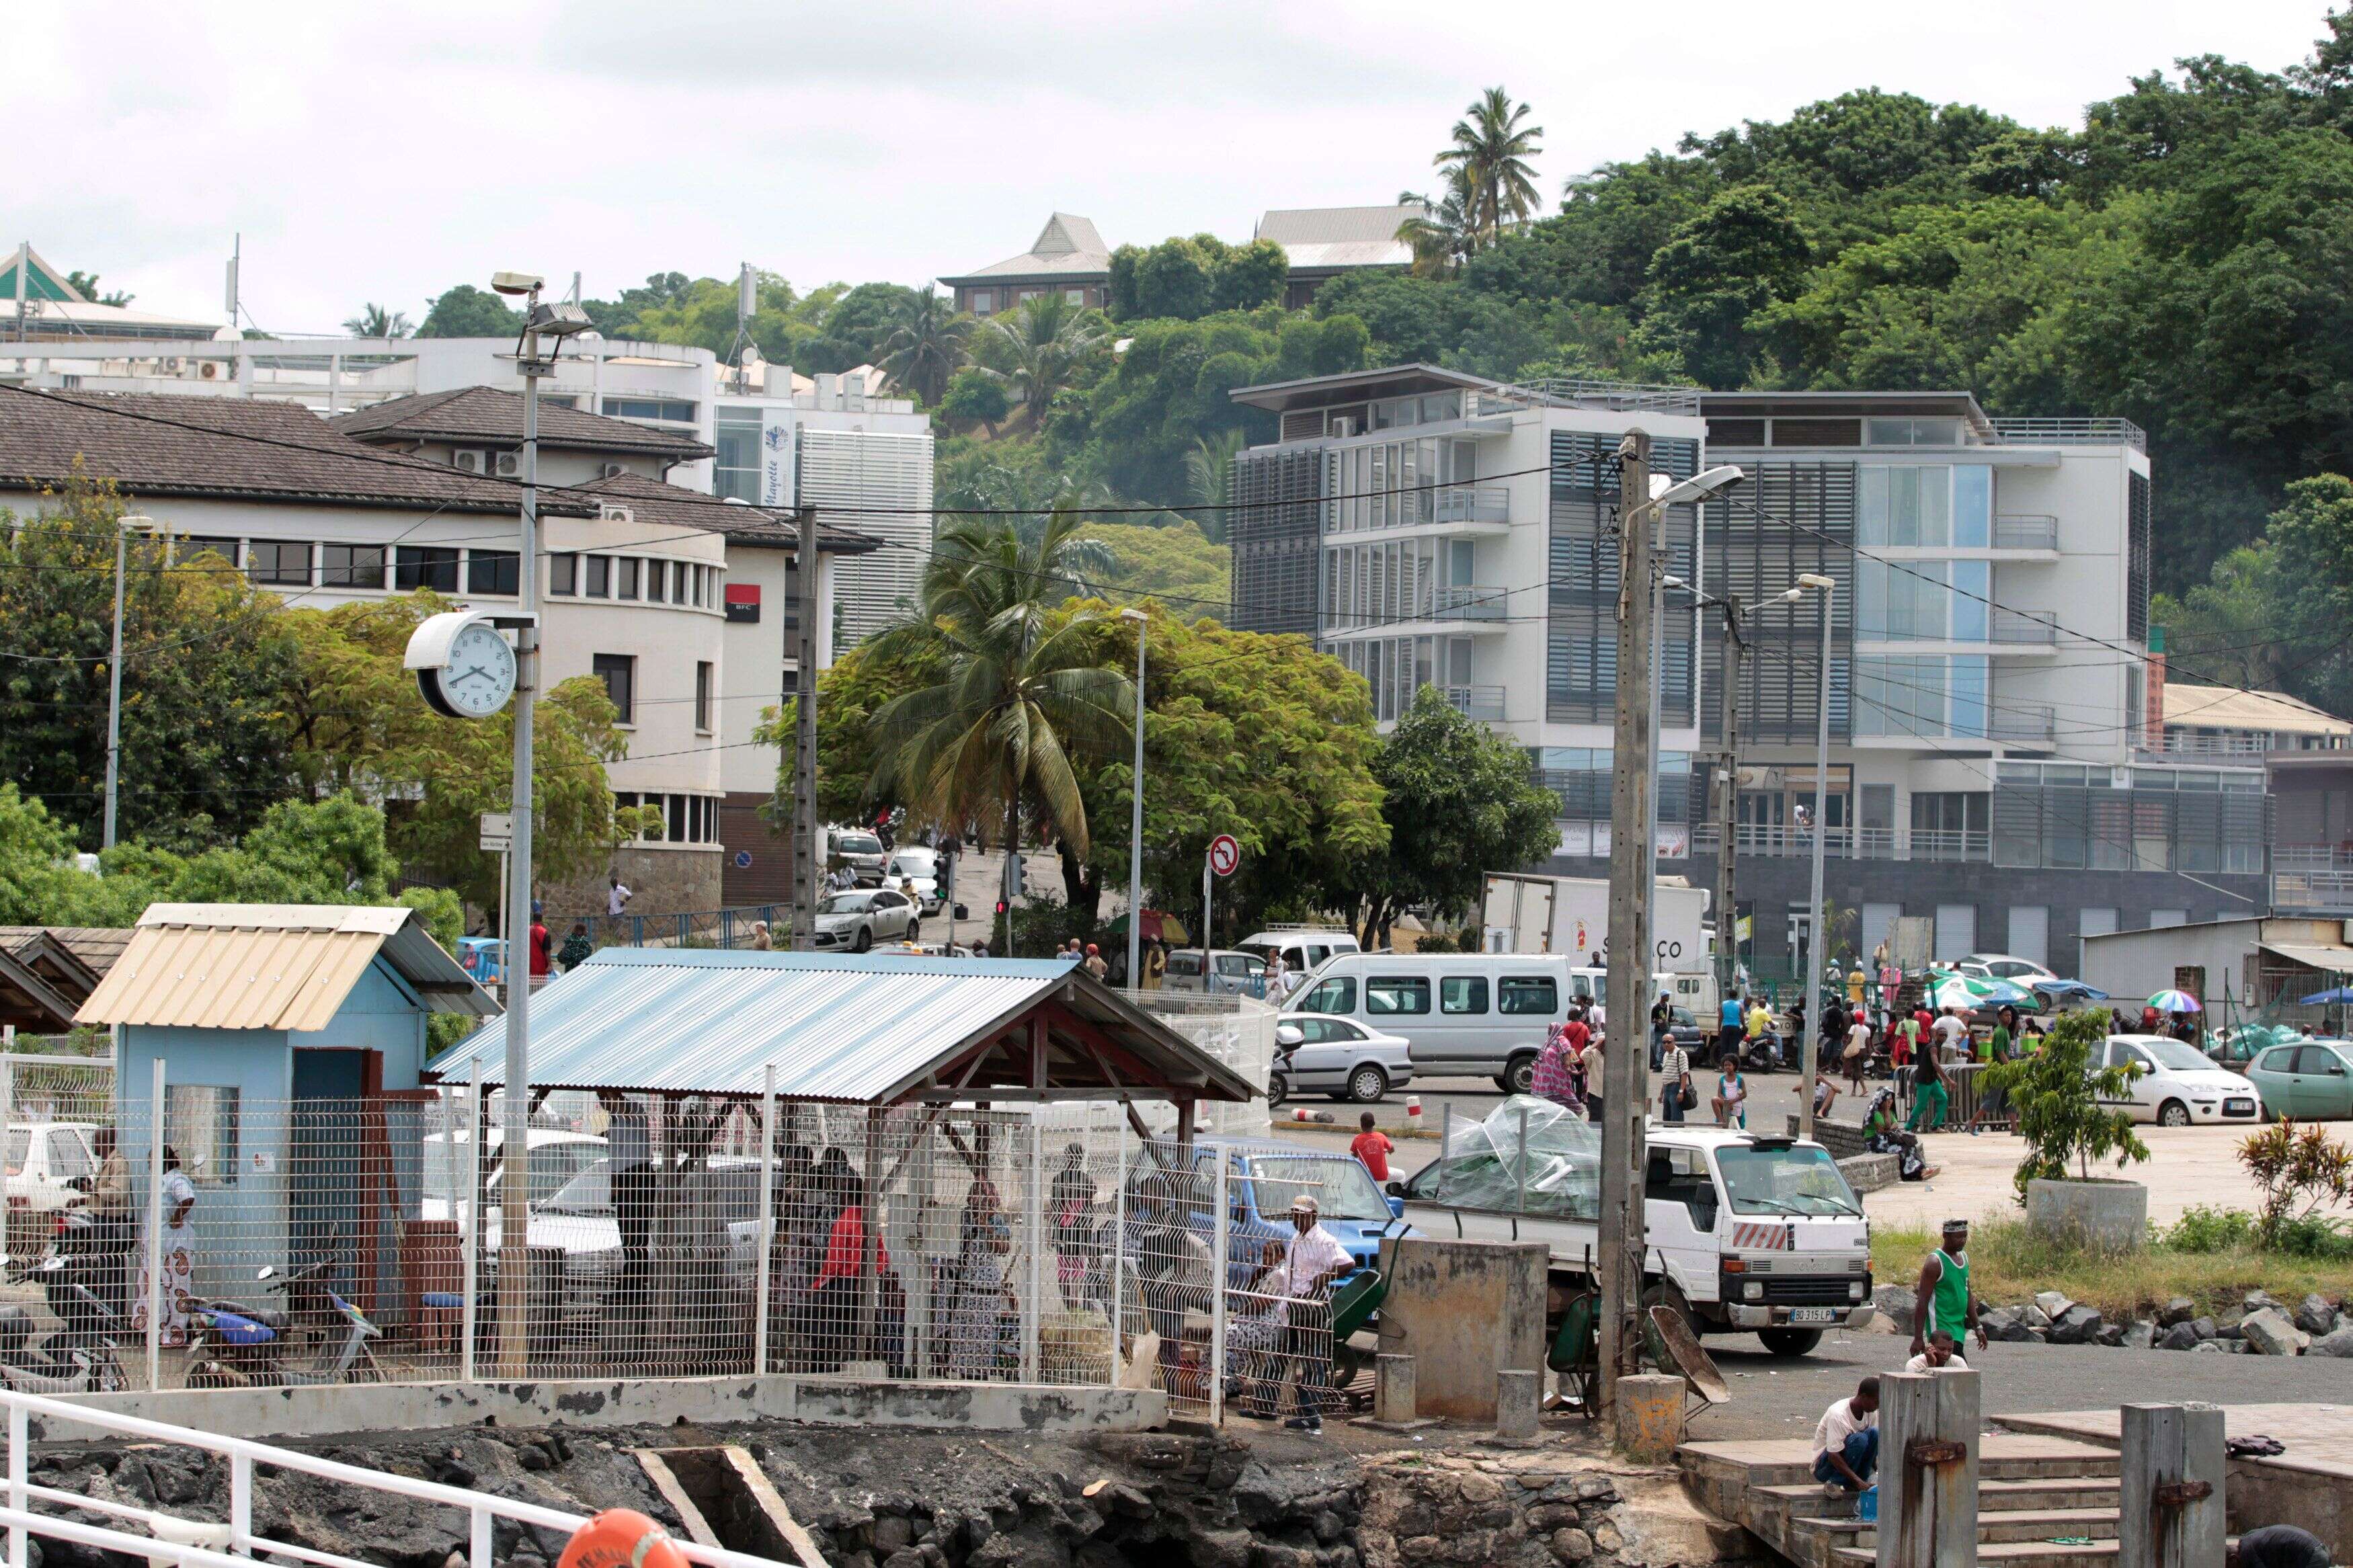 À Mayotte, Darmanin veut encore restreindre l'attribution de la nationalité française (Photo d'illustration: Dzaoudzi à Mayotte par REUTERS/Charles Platiau)